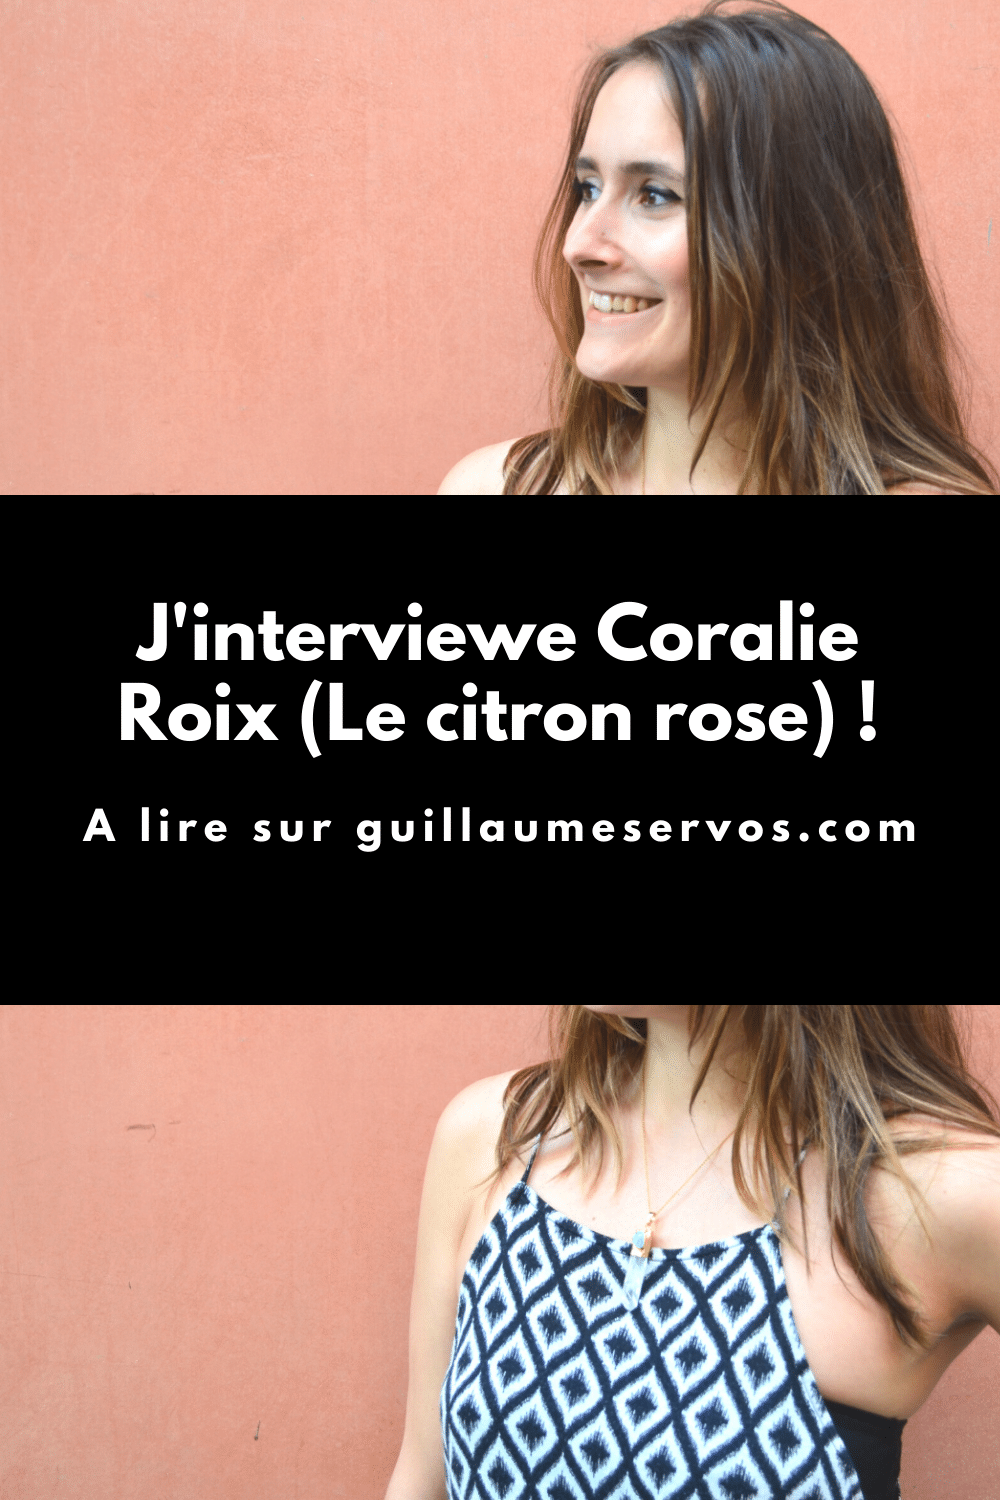 Découvre mon interview avec Coralie Roix (Le citron rose), community manager Instagram et Pinterest. Au menu : freelancing, réseaux sociaux, voyage…